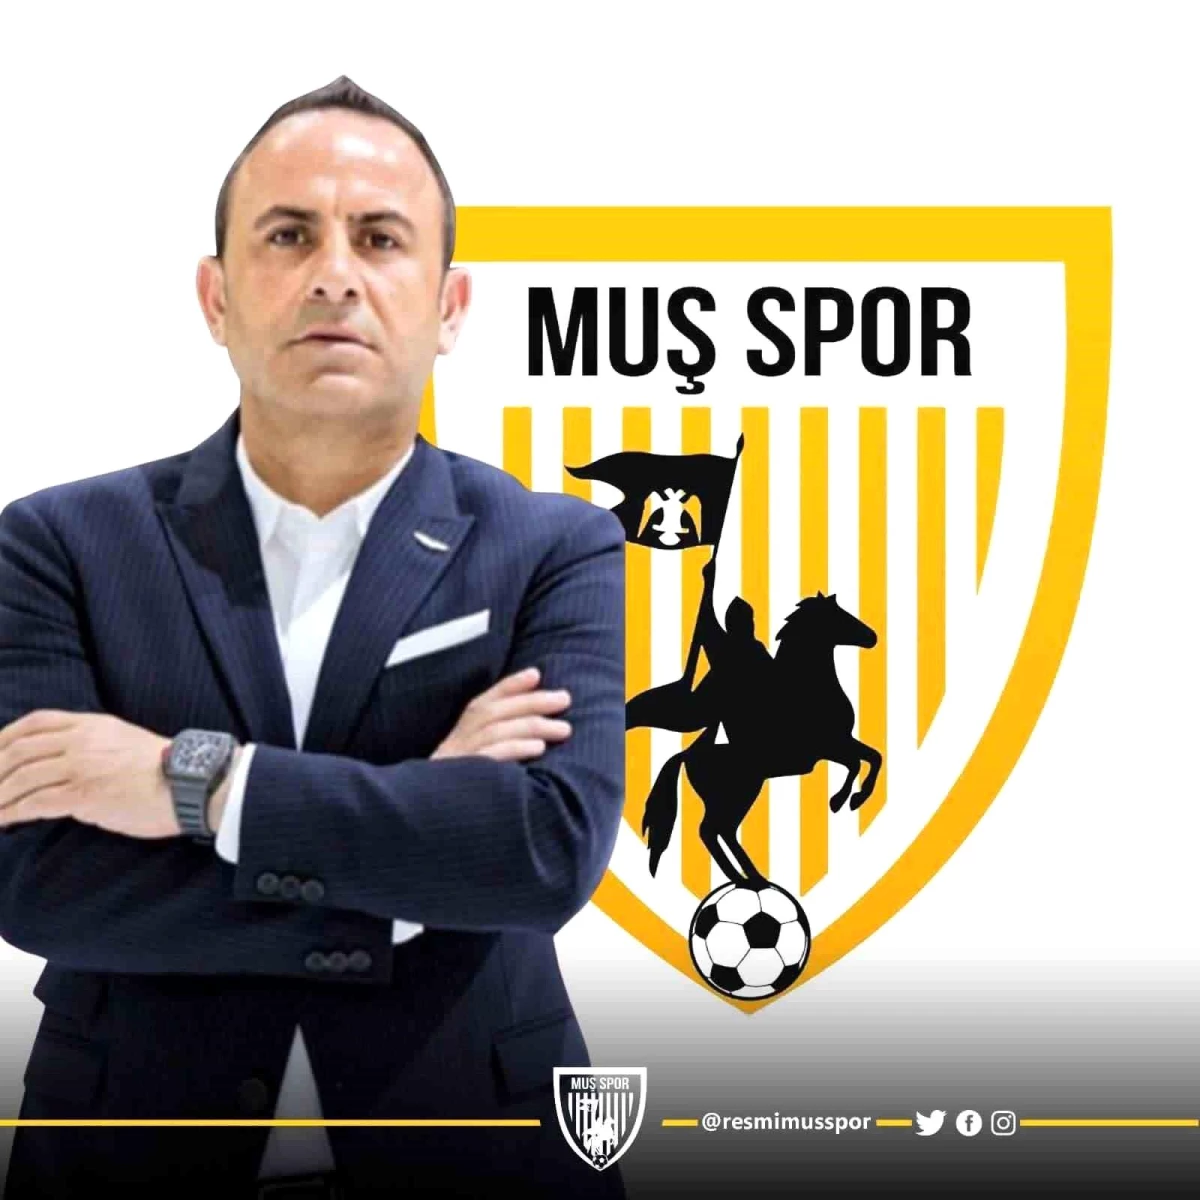 Muşspor Başkanı Nevzat Kaya: "Rezerv Lig kararı Türk futbolu için bir katkı sağlamayacaktır"